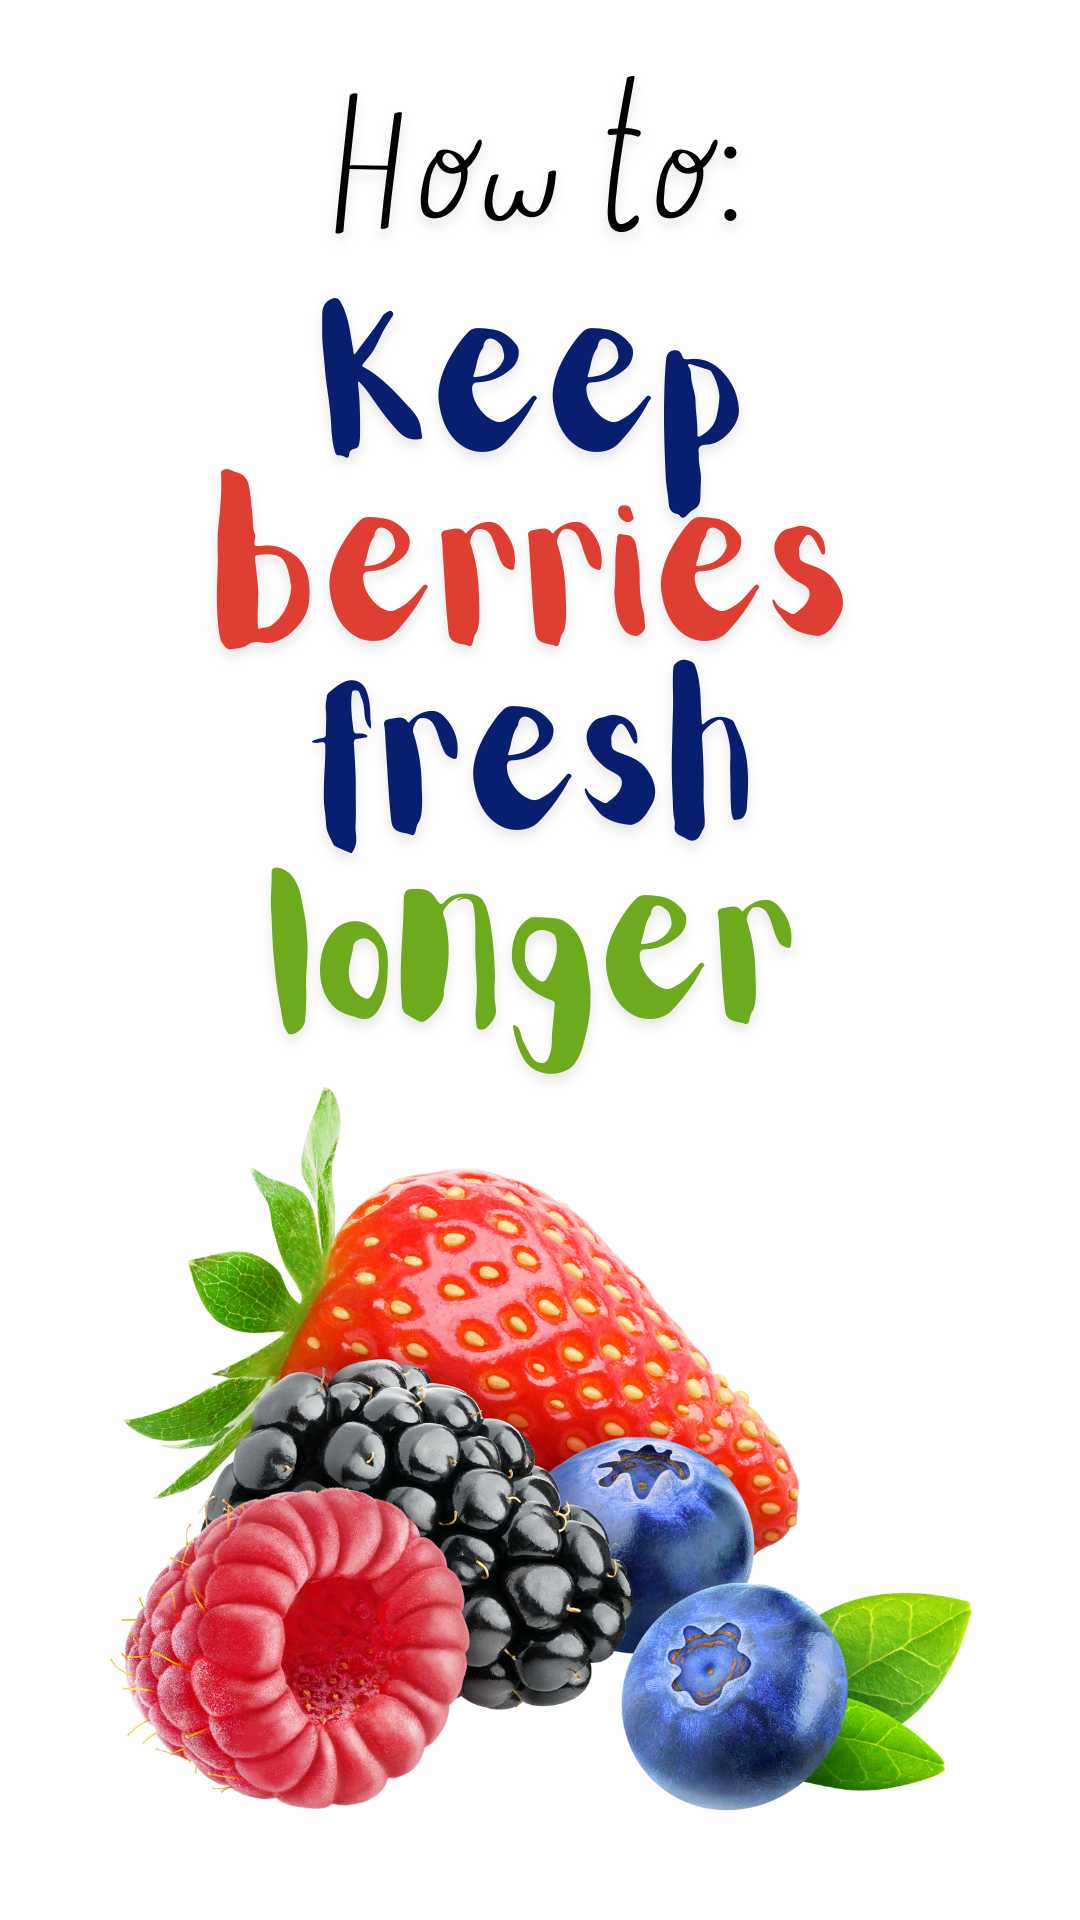 image of berries / how to keep berries fresh longer via @pullingcurls